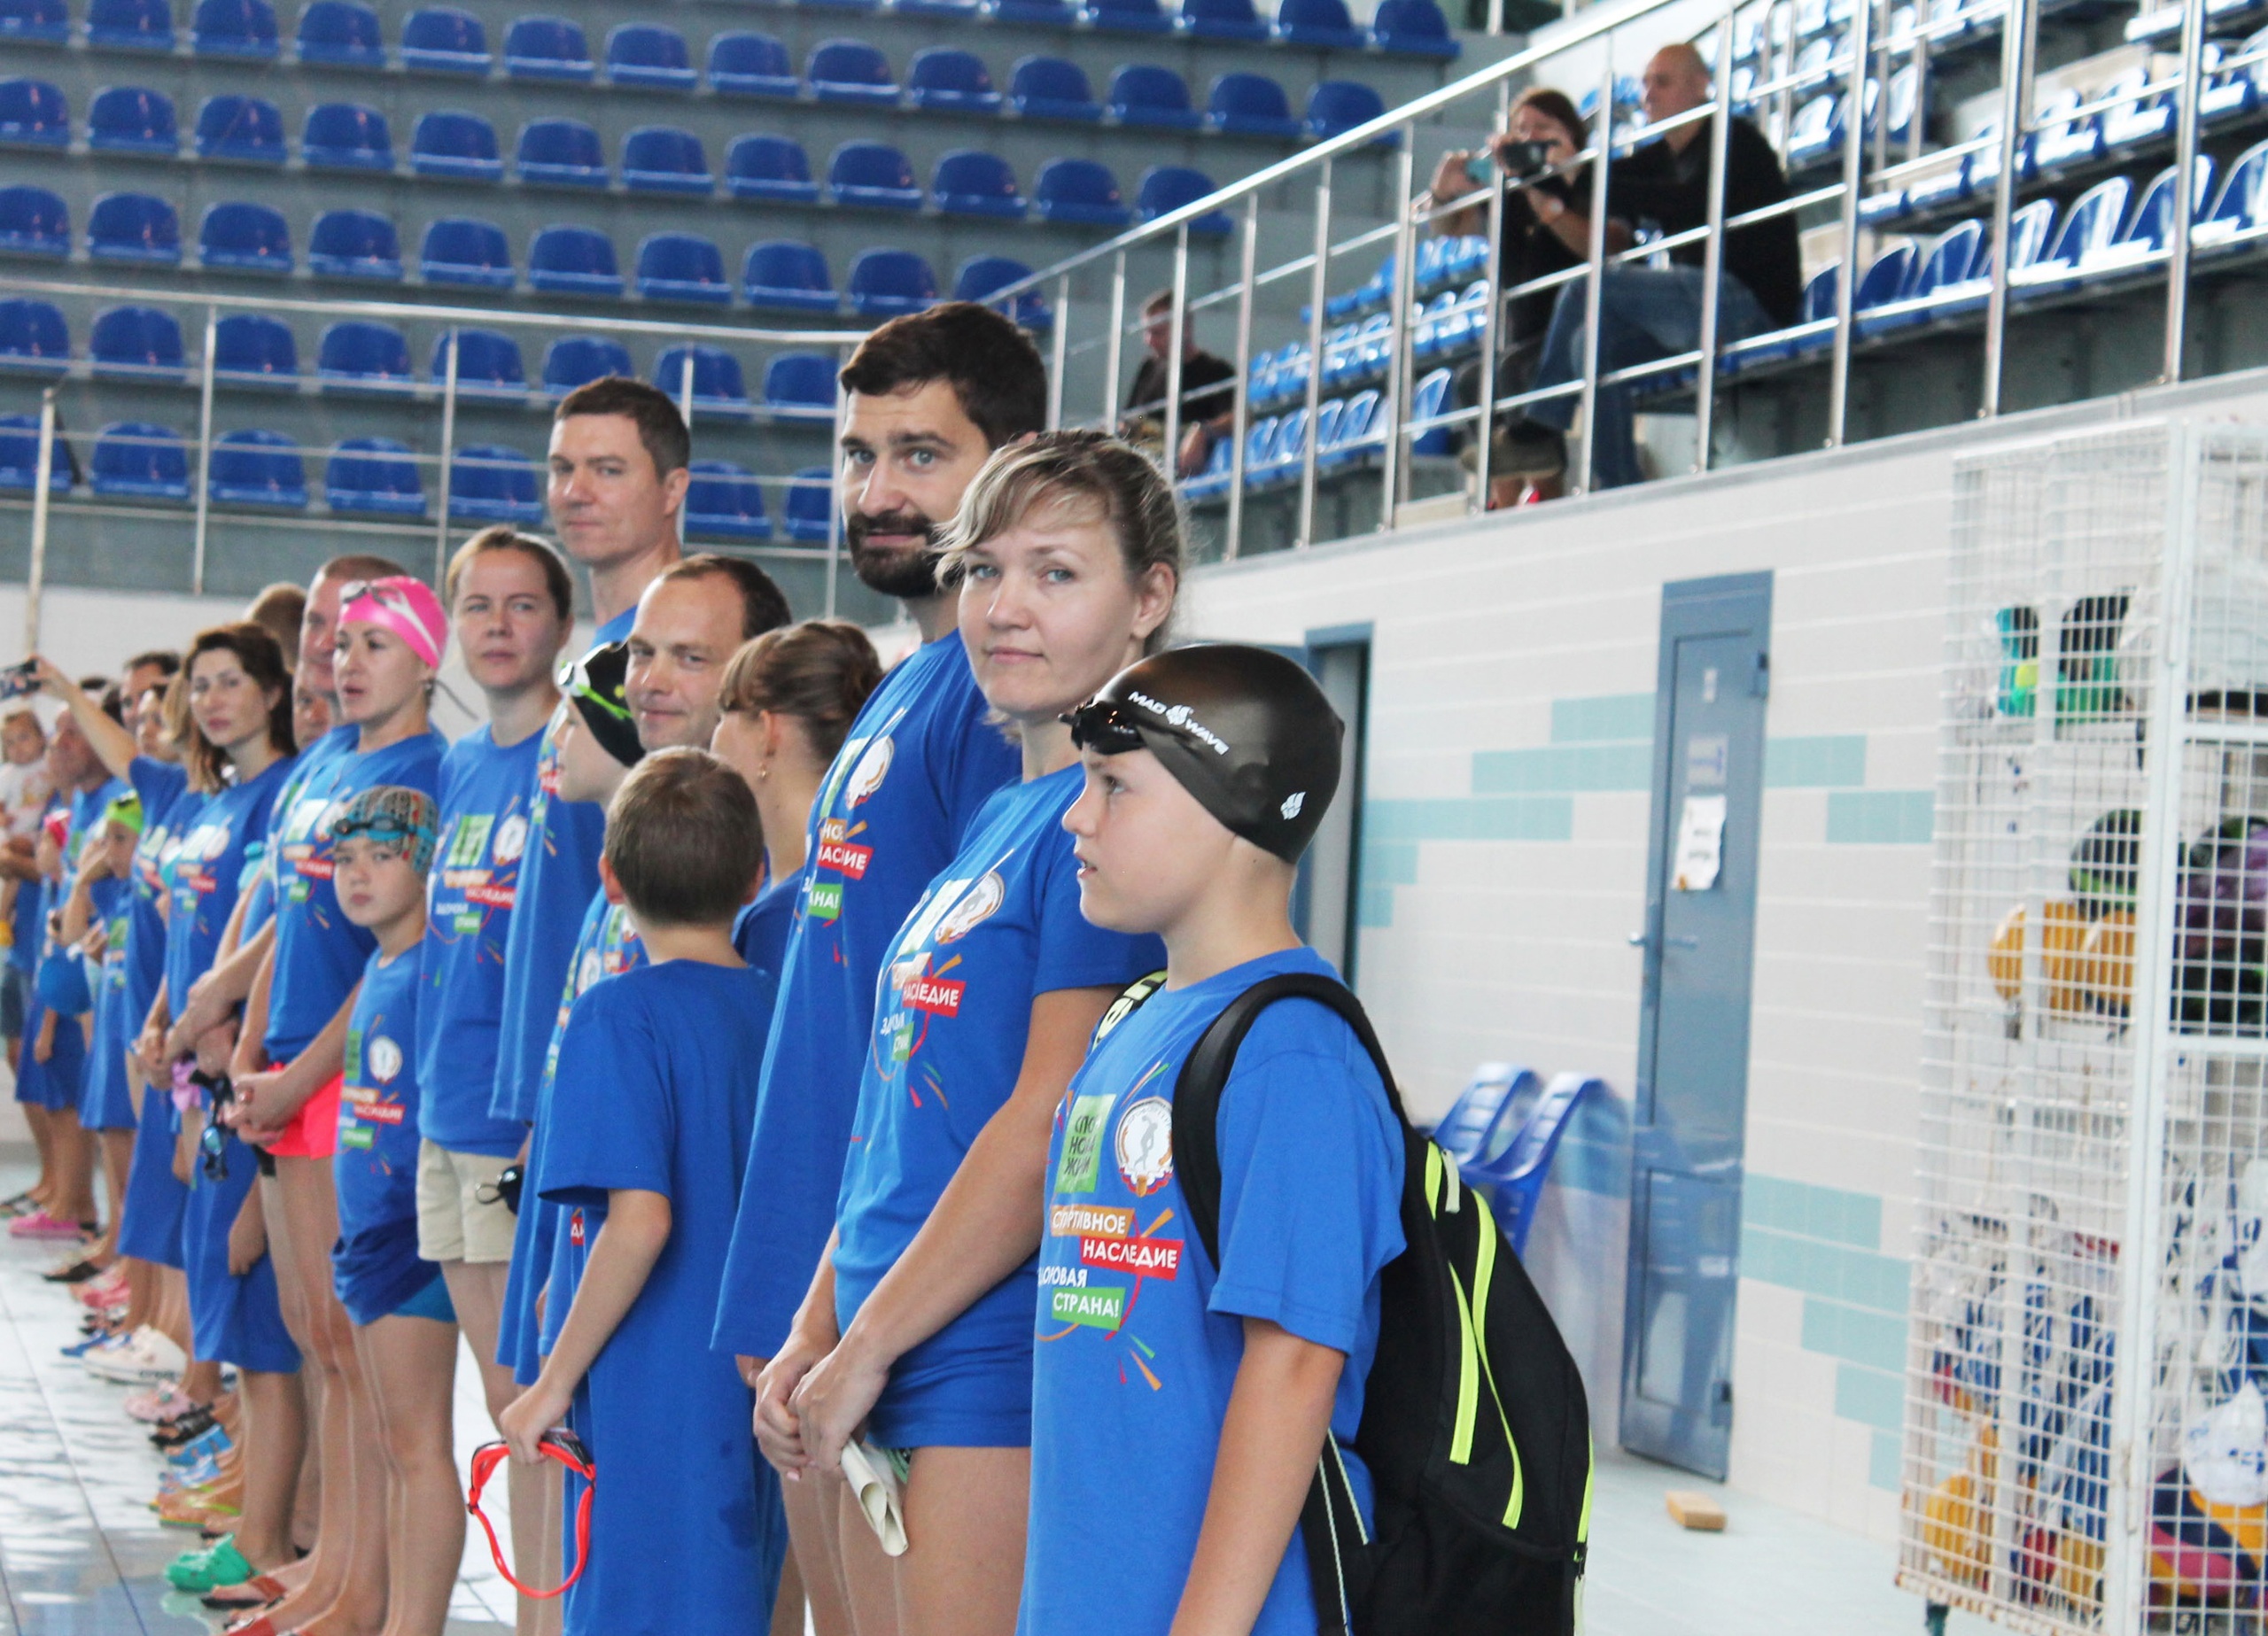 В Астраханской области в рамках II этапа Всероссийского проекта «Спортивное наследие – здоровая страна!» состоялись командные эстафеты по плаванию